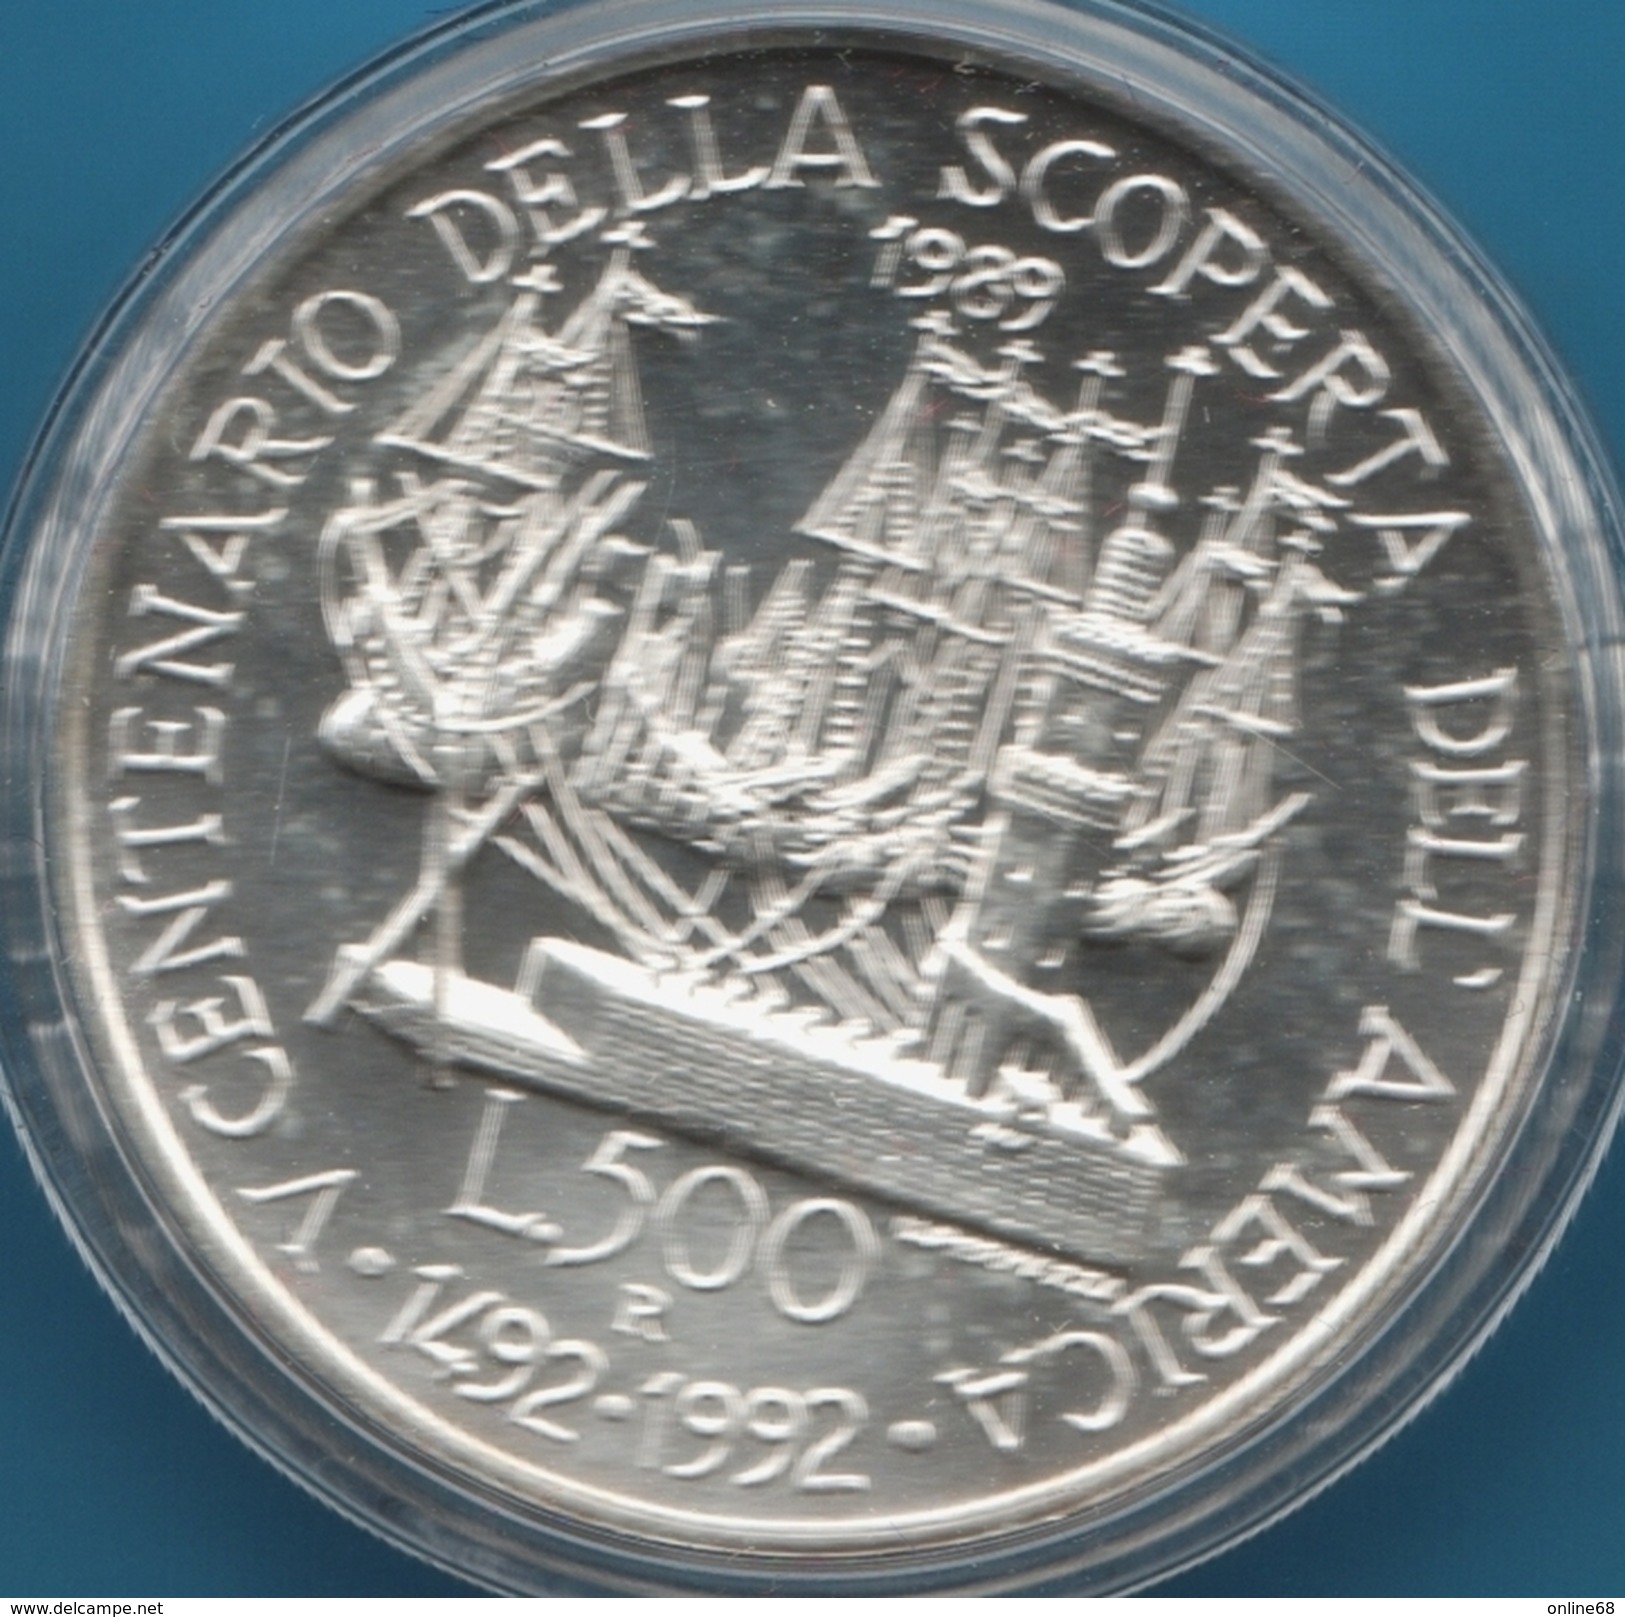 ITALIA 500 LIRE 1989 Christophe Colomb V CENTENARIO DELLA SCOPERTA DELL' AMERICA  Silver 0.835 	KM# 139 - Commemorative